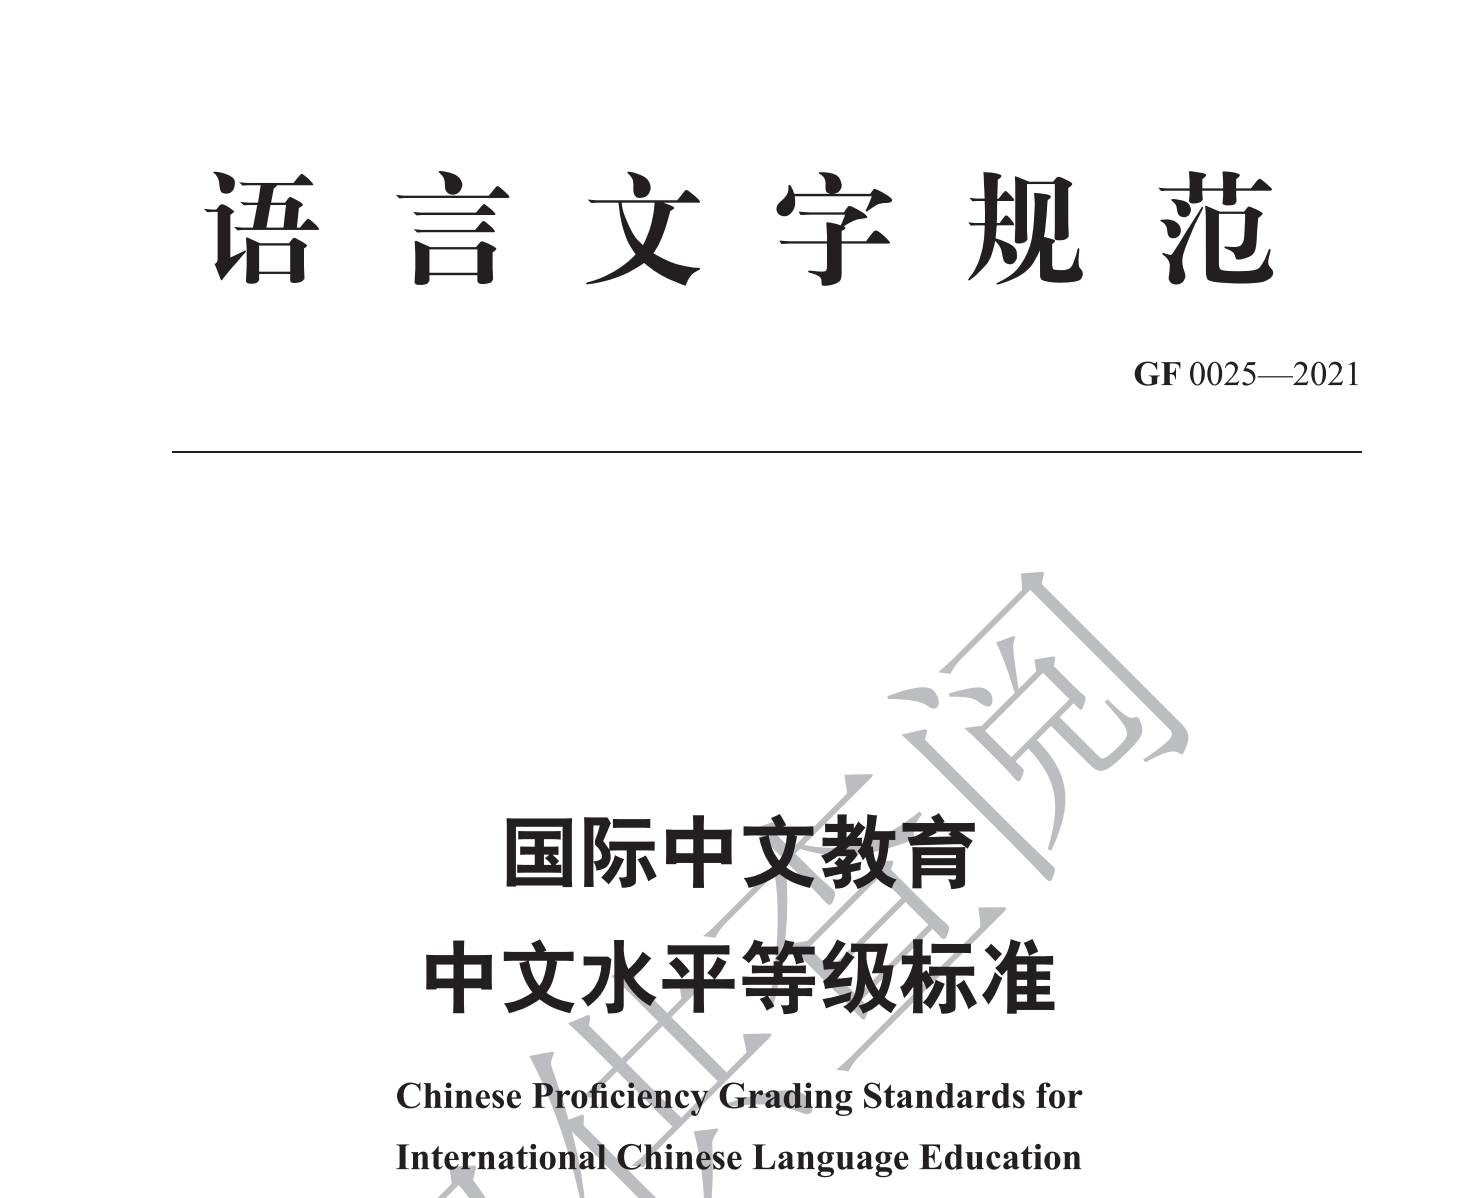 《国际中文教育中文水平等级标准》发布